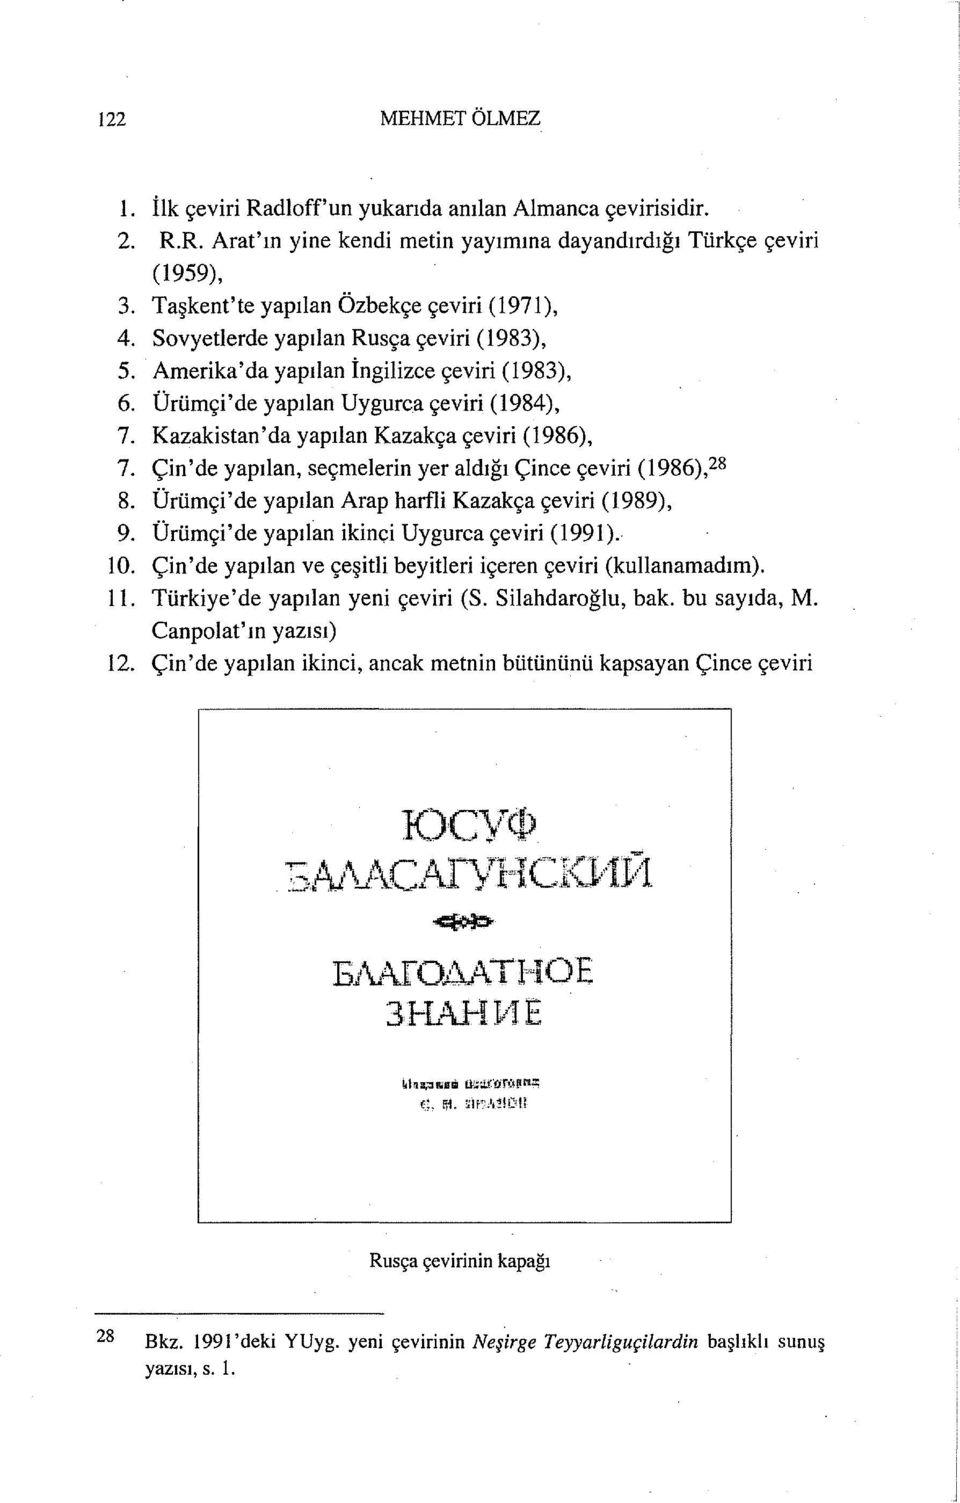 Kazakistan'da yapılan Kazakça çeviri (1986), 7. Çin 'de yapılan, seçmelerin yer aldığı Çince çeviri (1986),28 8. Ürümçi'de yapılan Arap harfli Kazakça çeviri (1989), 9.